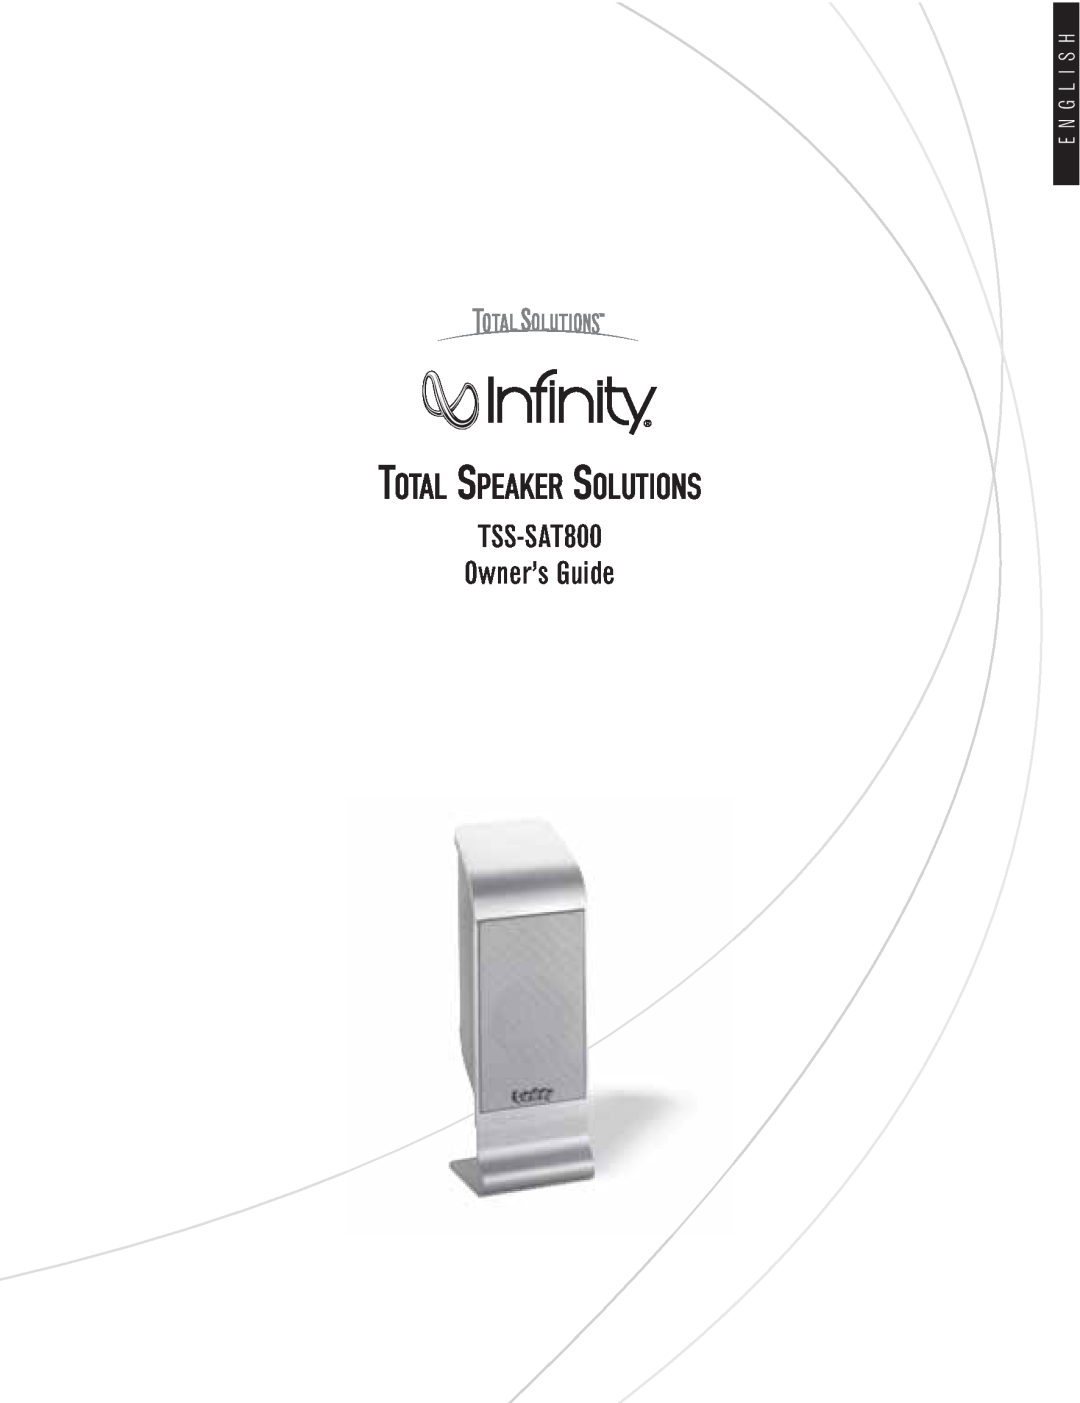 Infinity manual E N G L I S H, Total Speaker Solutions, TSS-SAT800 Owner’s Guide 